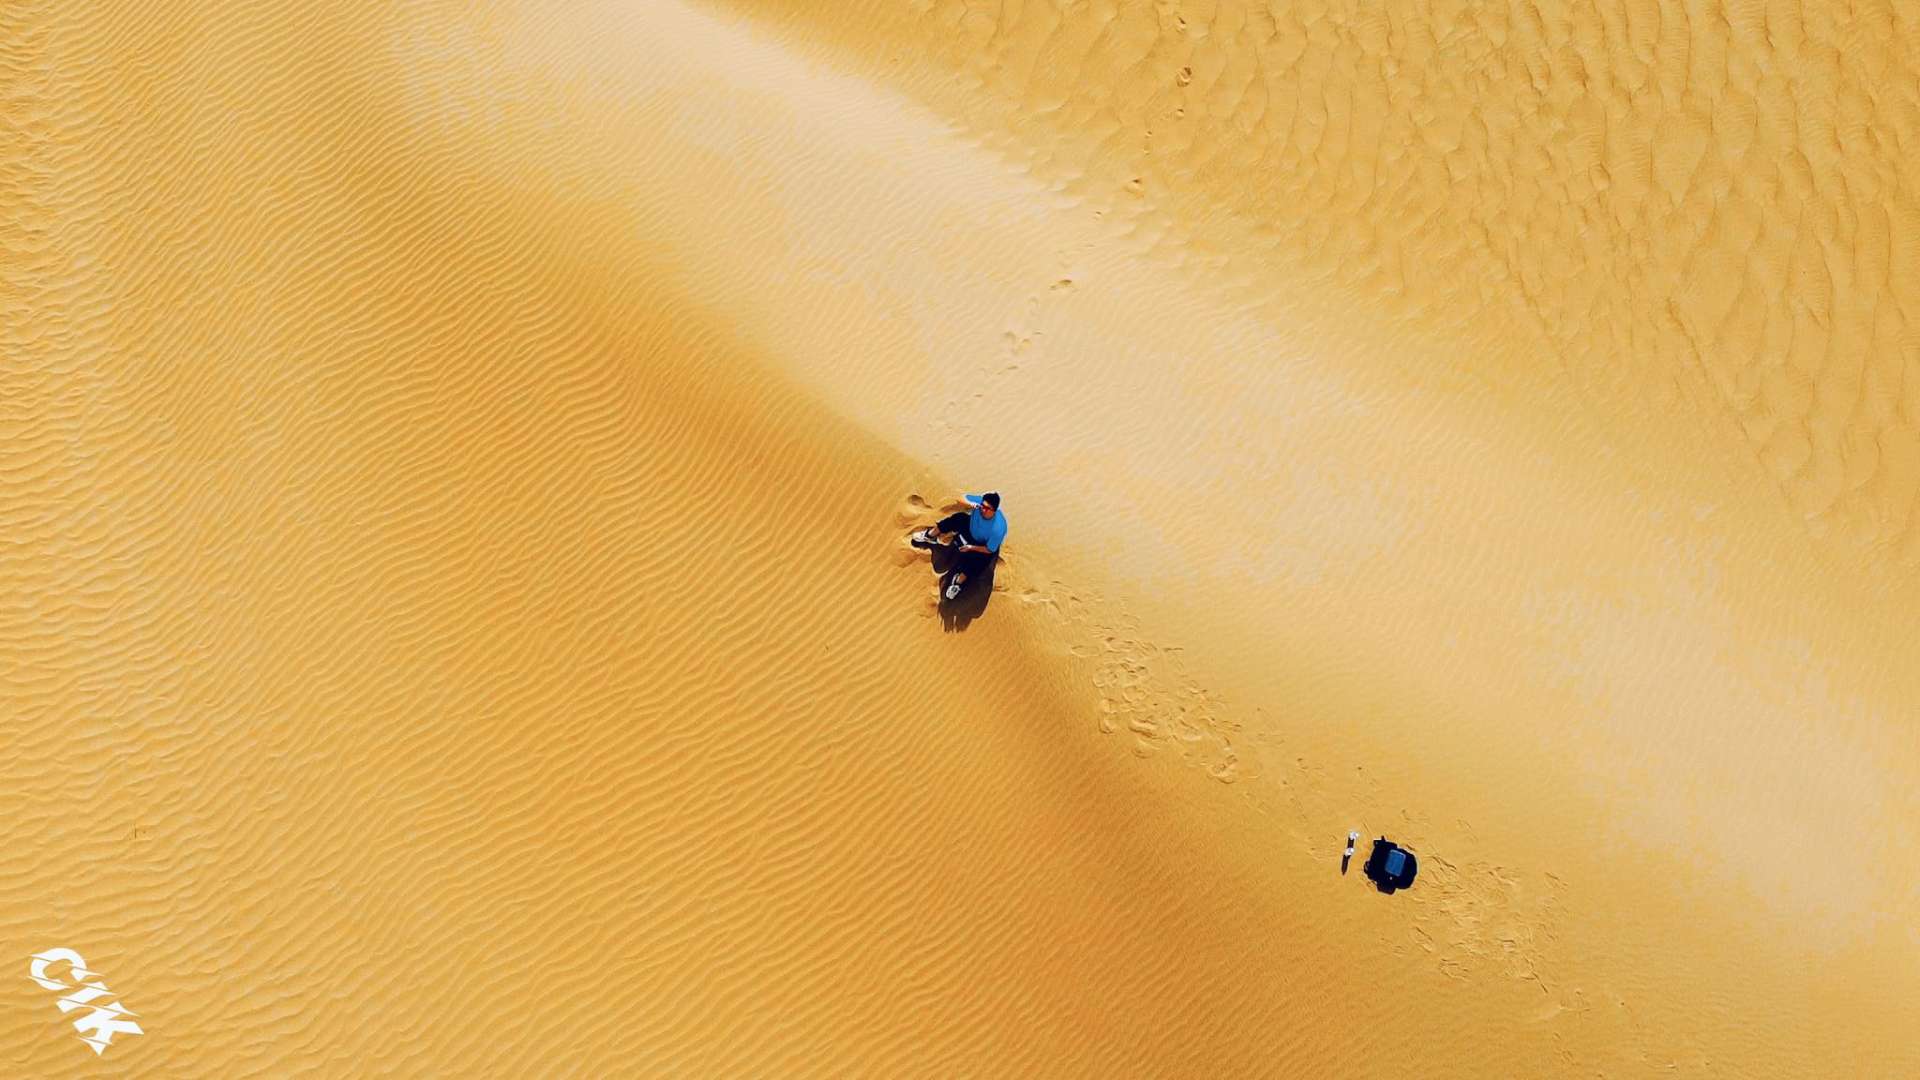 塔克拉玛干沙漠